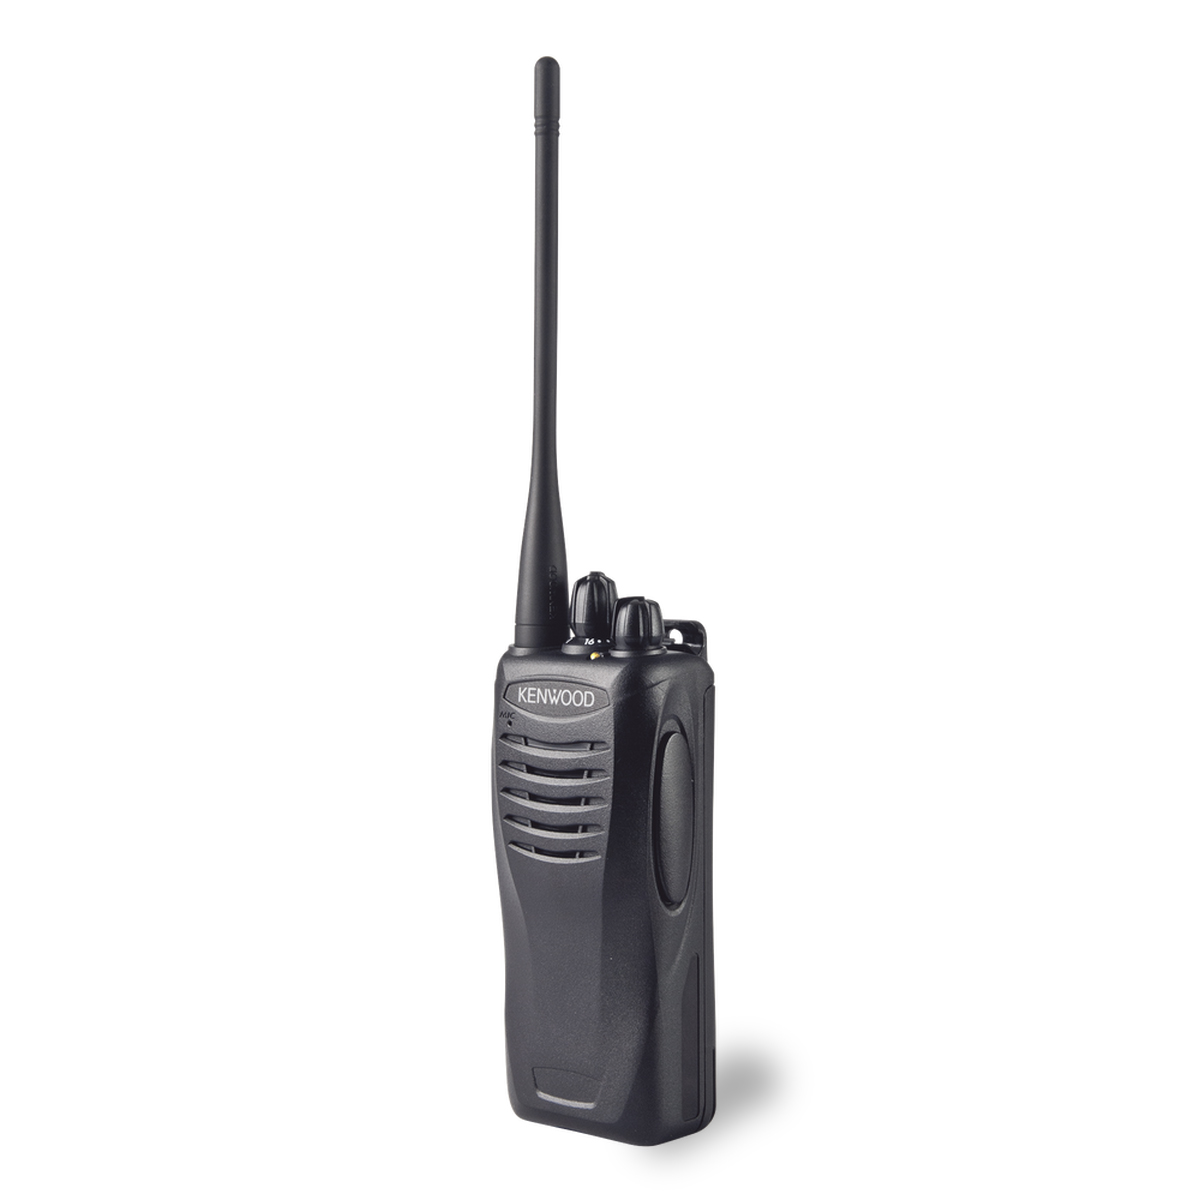 Radio KENWOOD TK-3402 Analógico UHF 400-470 MHz